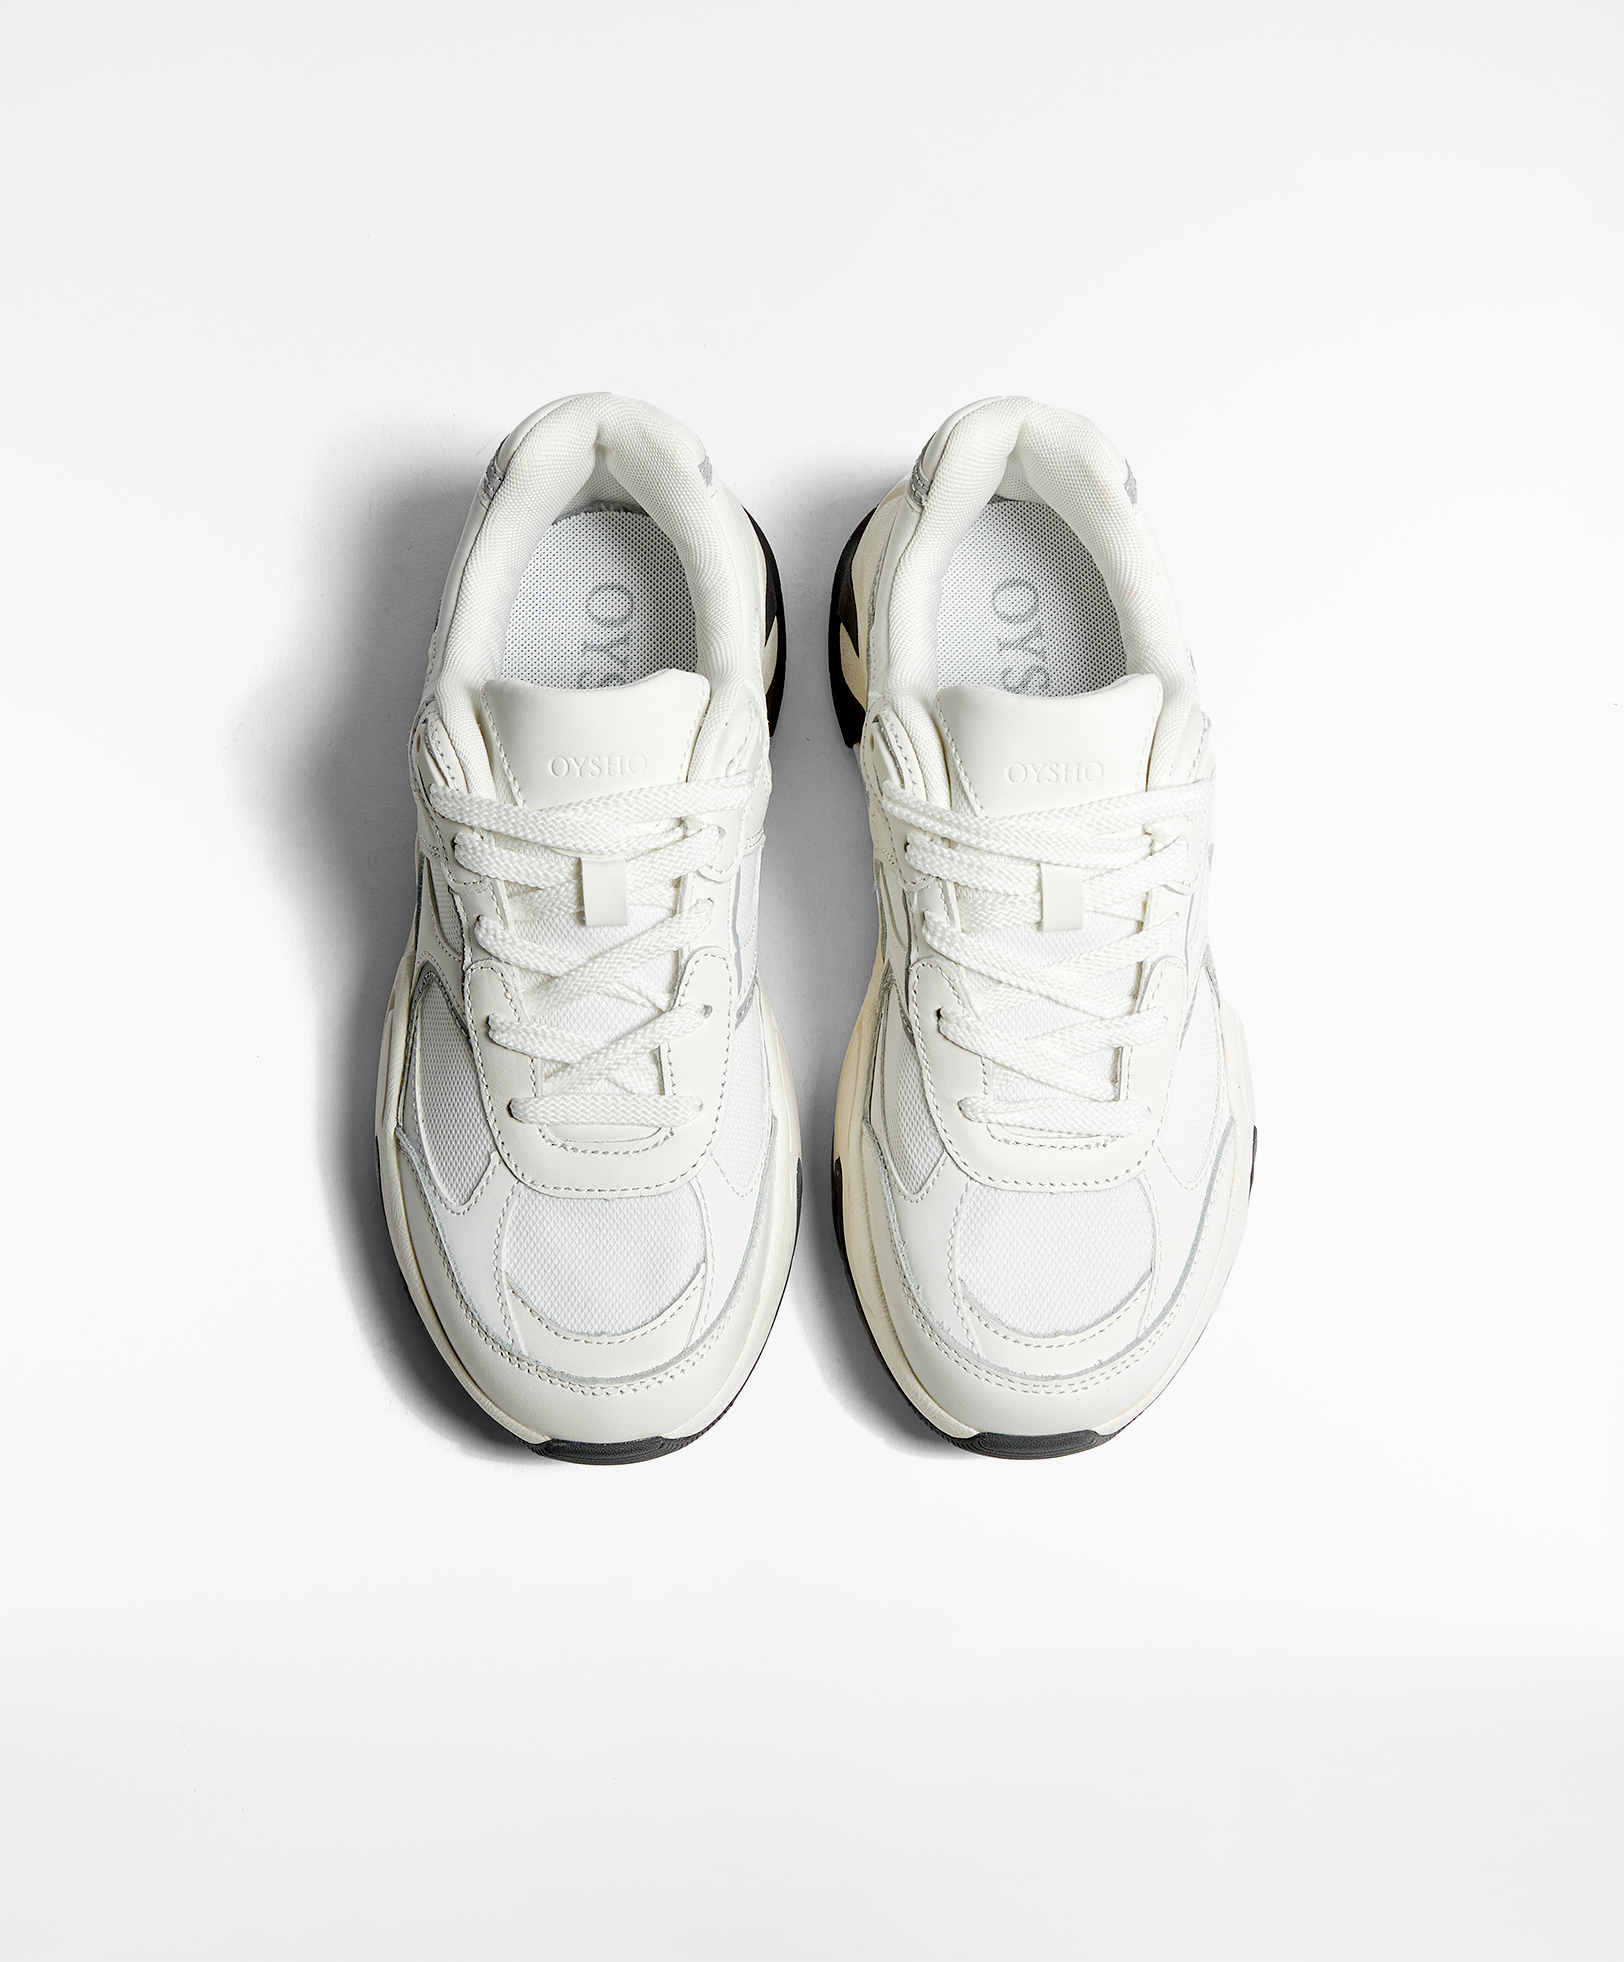 Sneakers med Vibram® XS TREK sål | OYSHO Danmark / Denmark